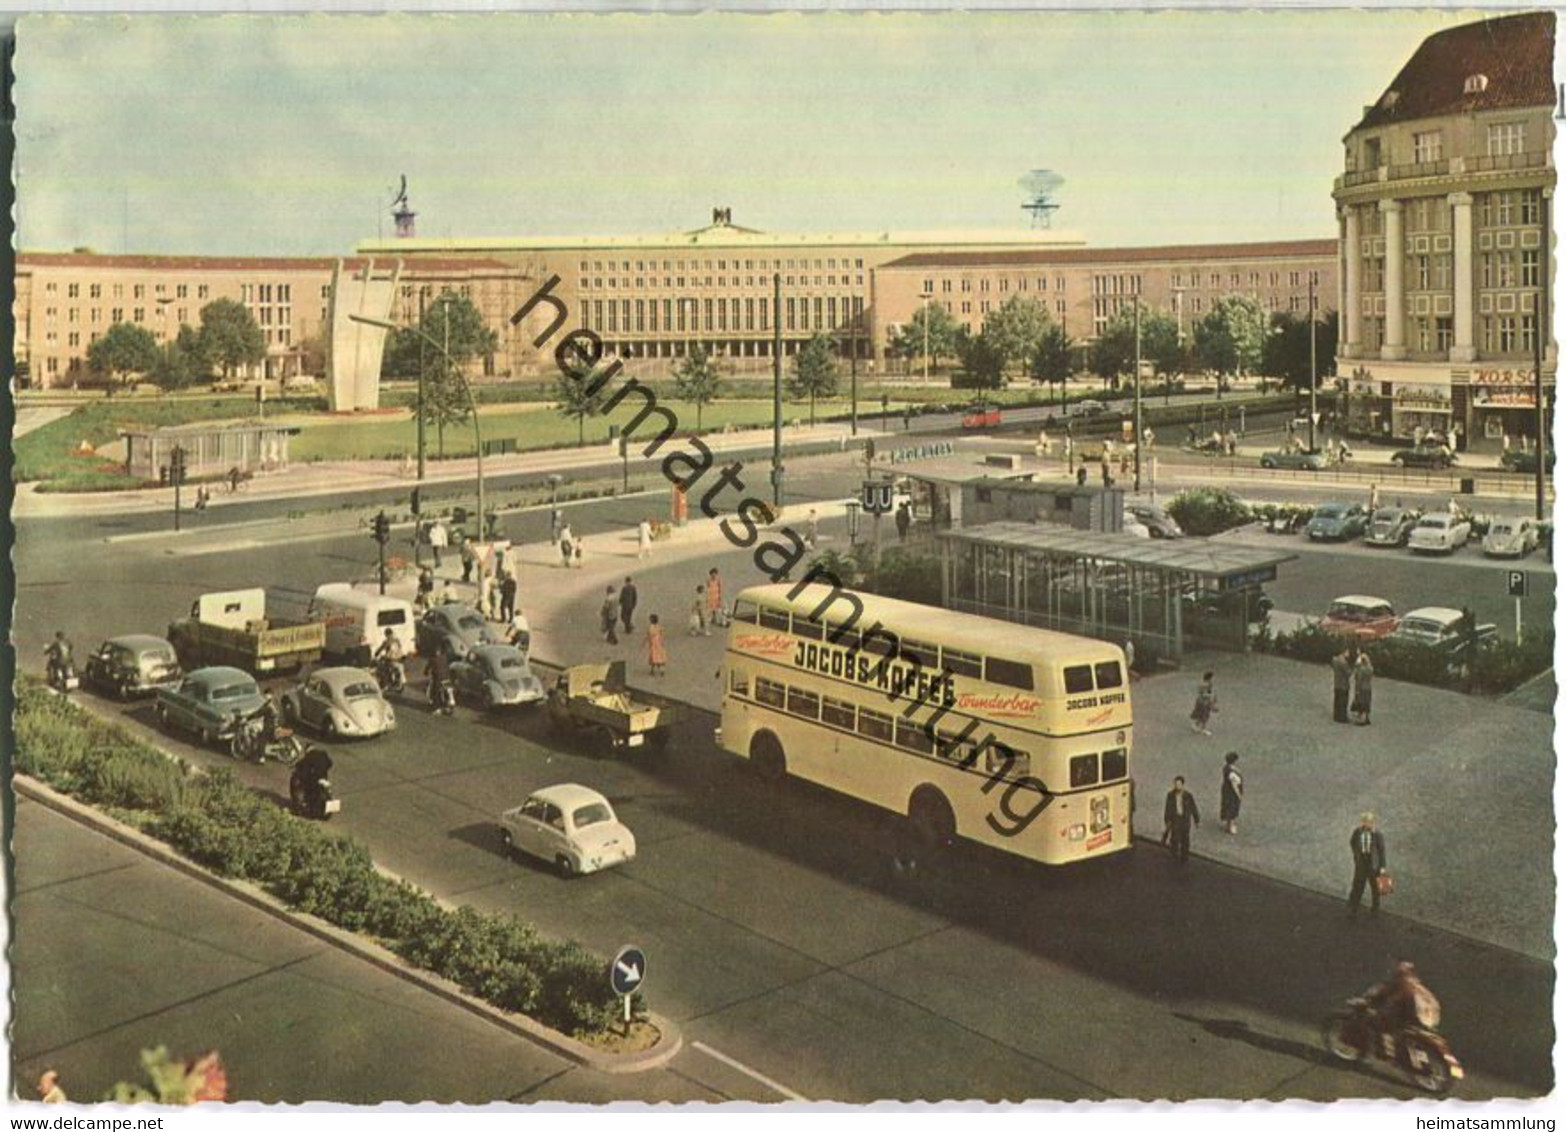 Berlin - Platz Der Luftbrücke - BVG Bus - Hans Andres Verlag Berlin - Tempelhof